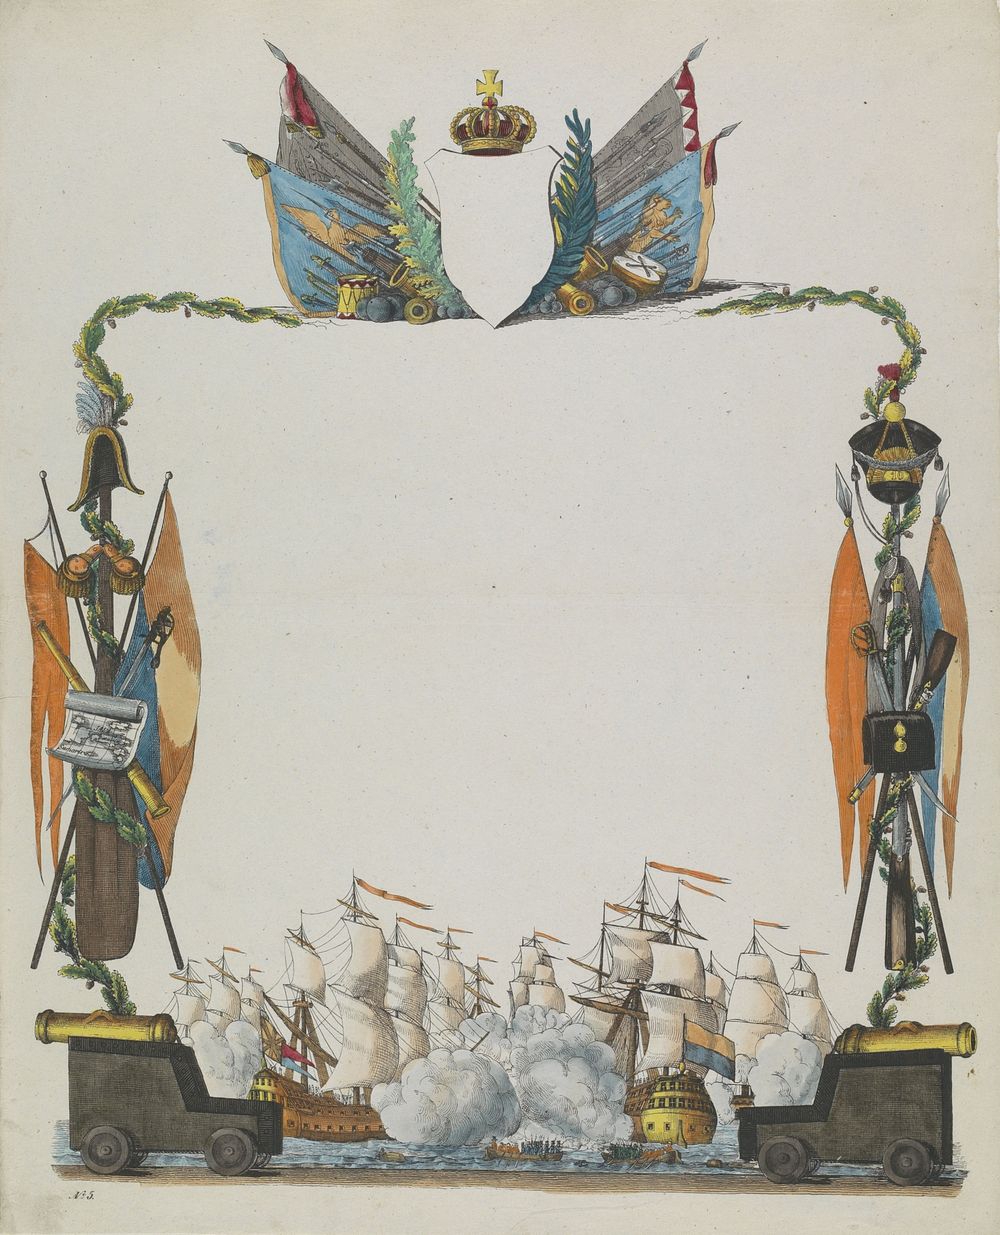 Wensbrief met een zeeslag, kanonnen en vlaggen (c. 1780 - c. 1899) by anonymous and anonymous